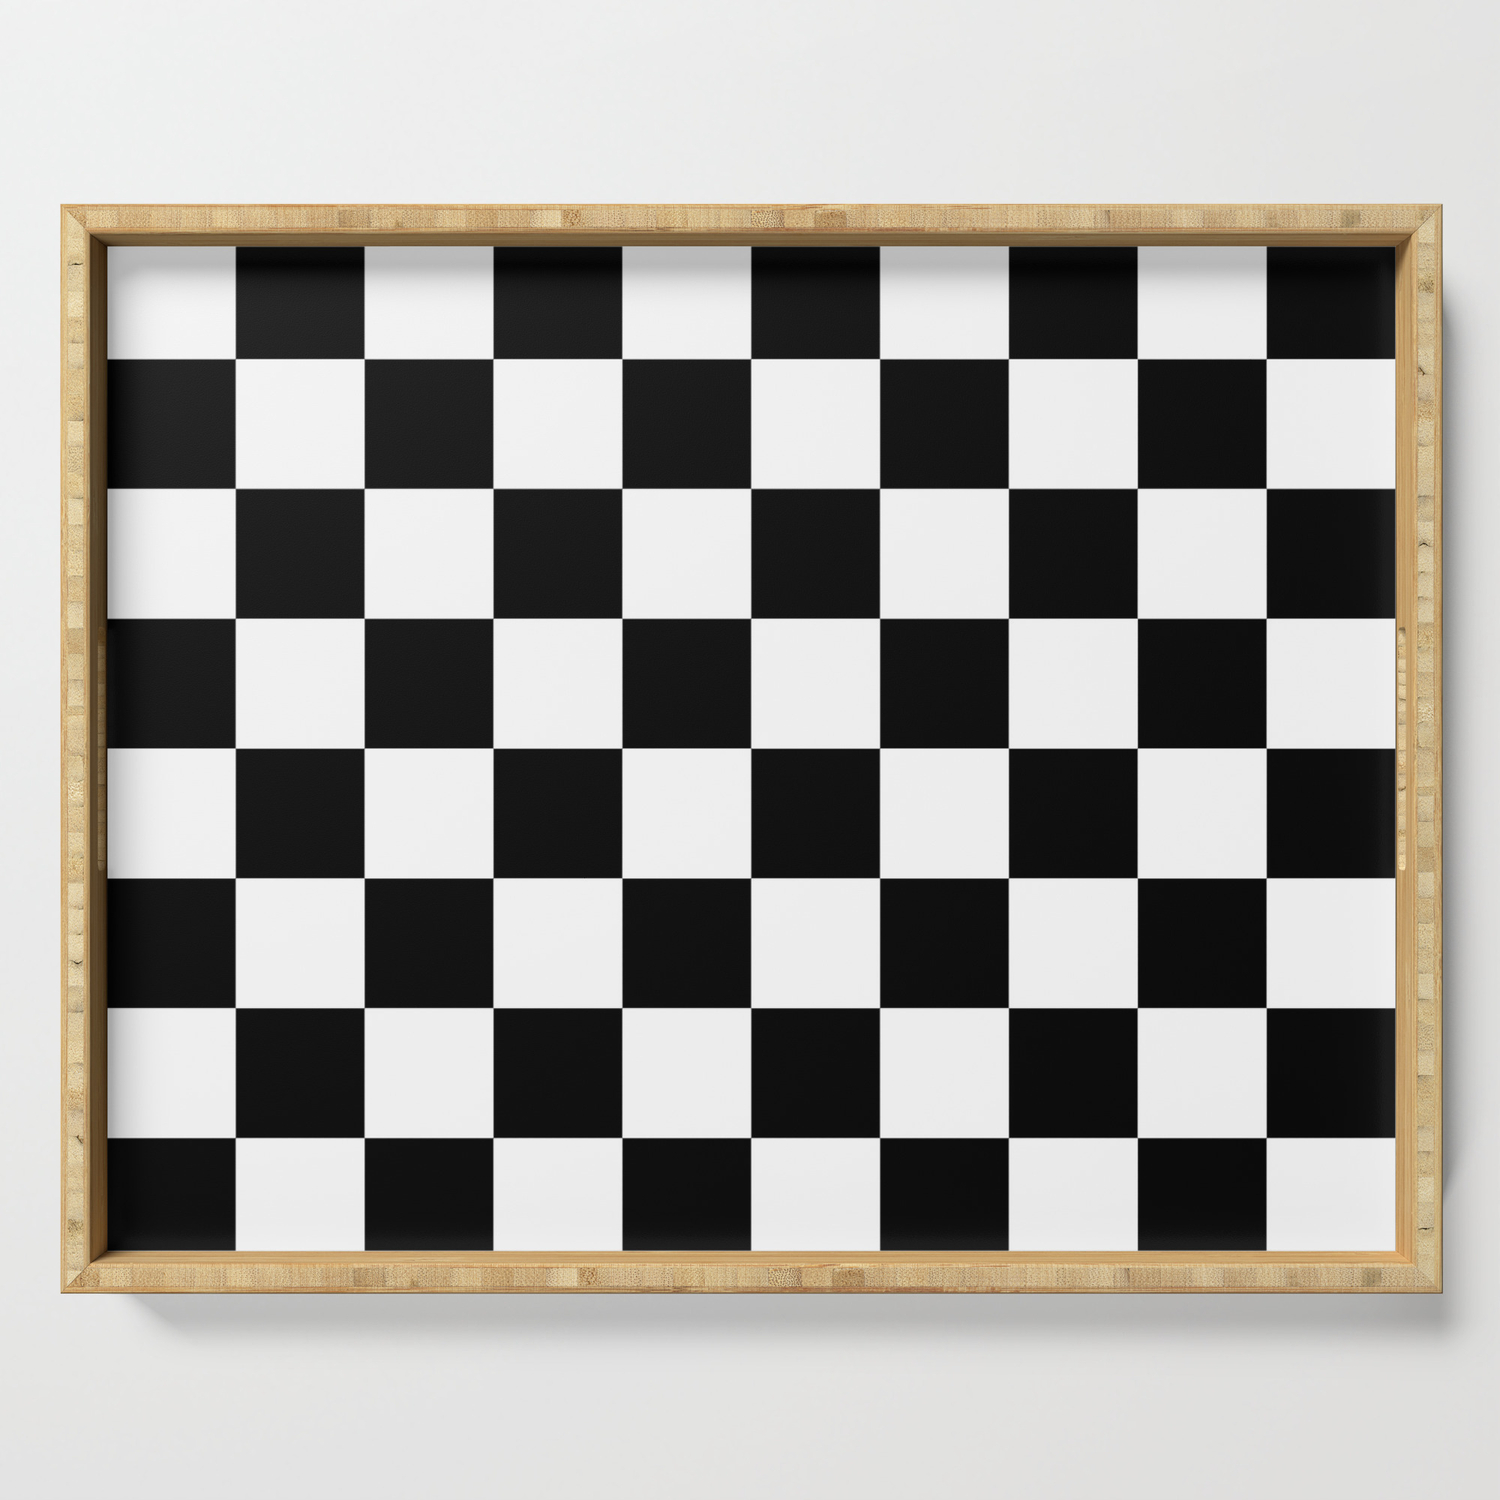 checkerboard black white